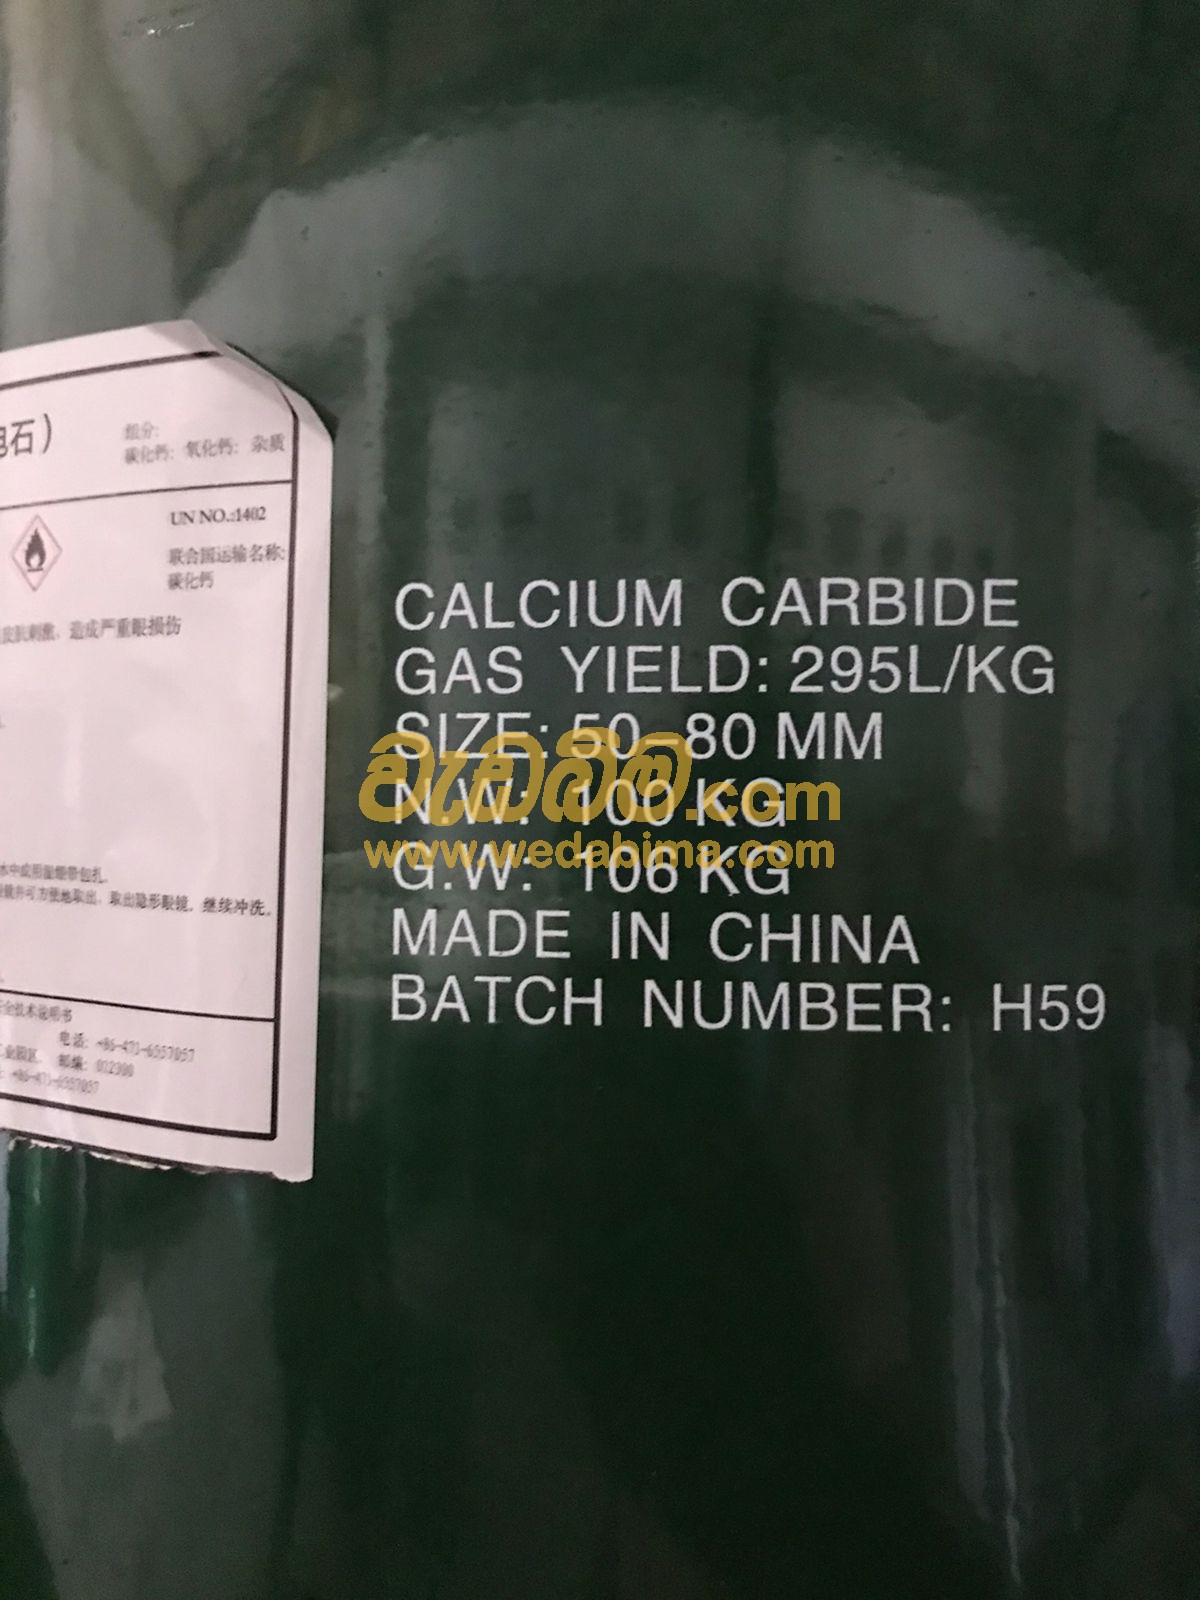 Calcium Carbide in Sri Lanka